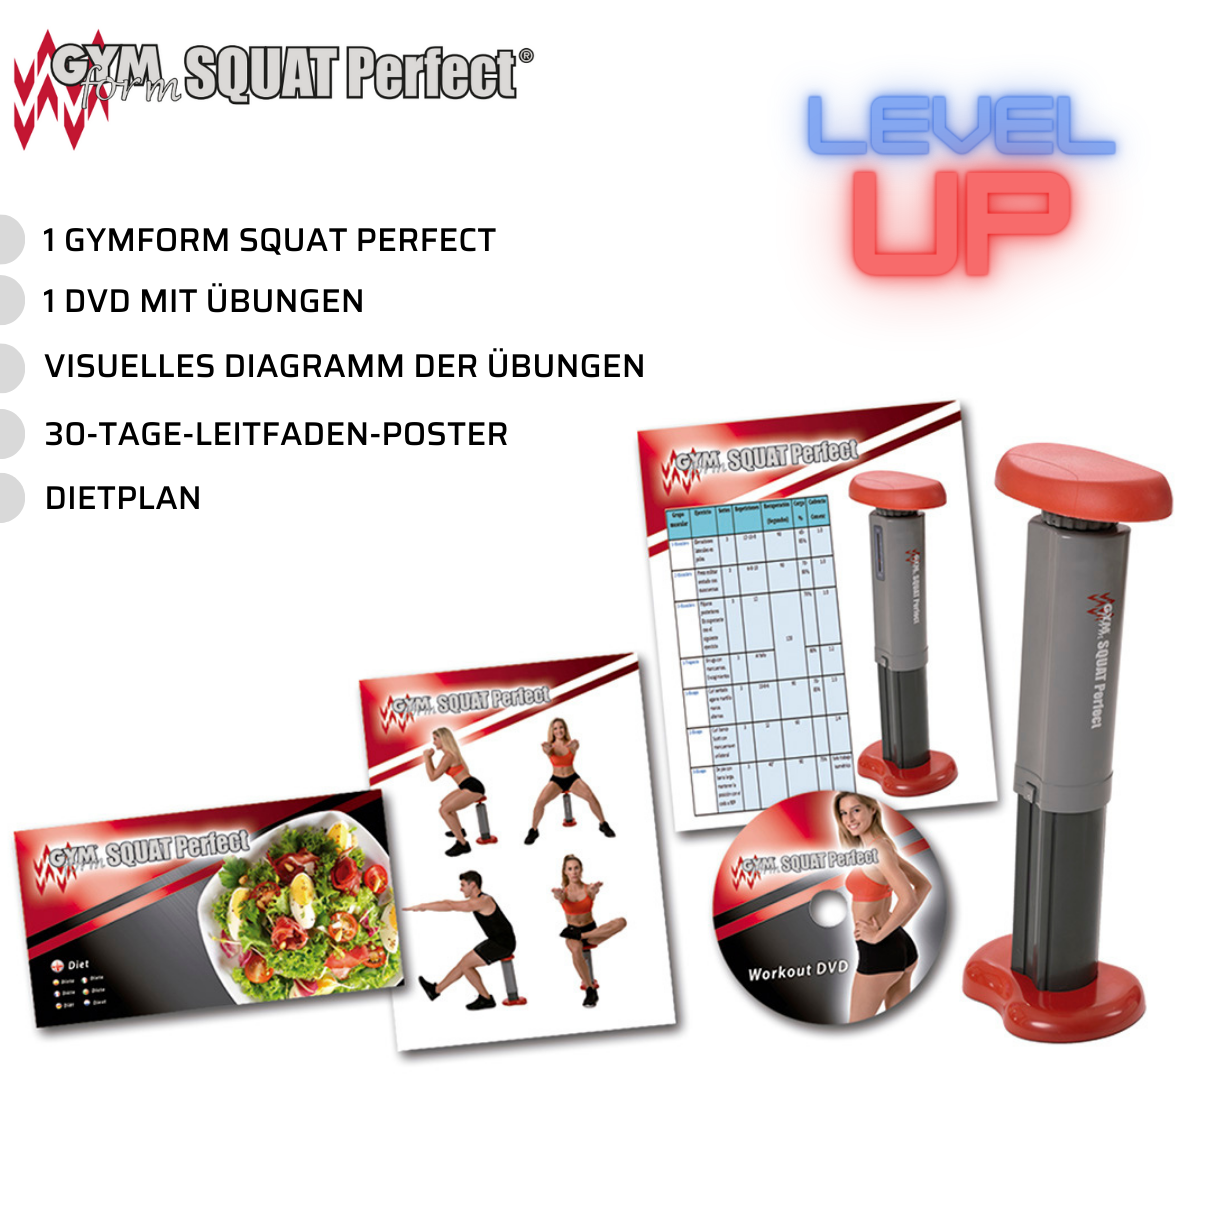 GYMFORM Squat Perfect Beinmuskeltraning, Kniebeugentrainer, Trainigsgerät, Gesäßmuskeltraining Hometrainer, - Kniebeugen grau/rot